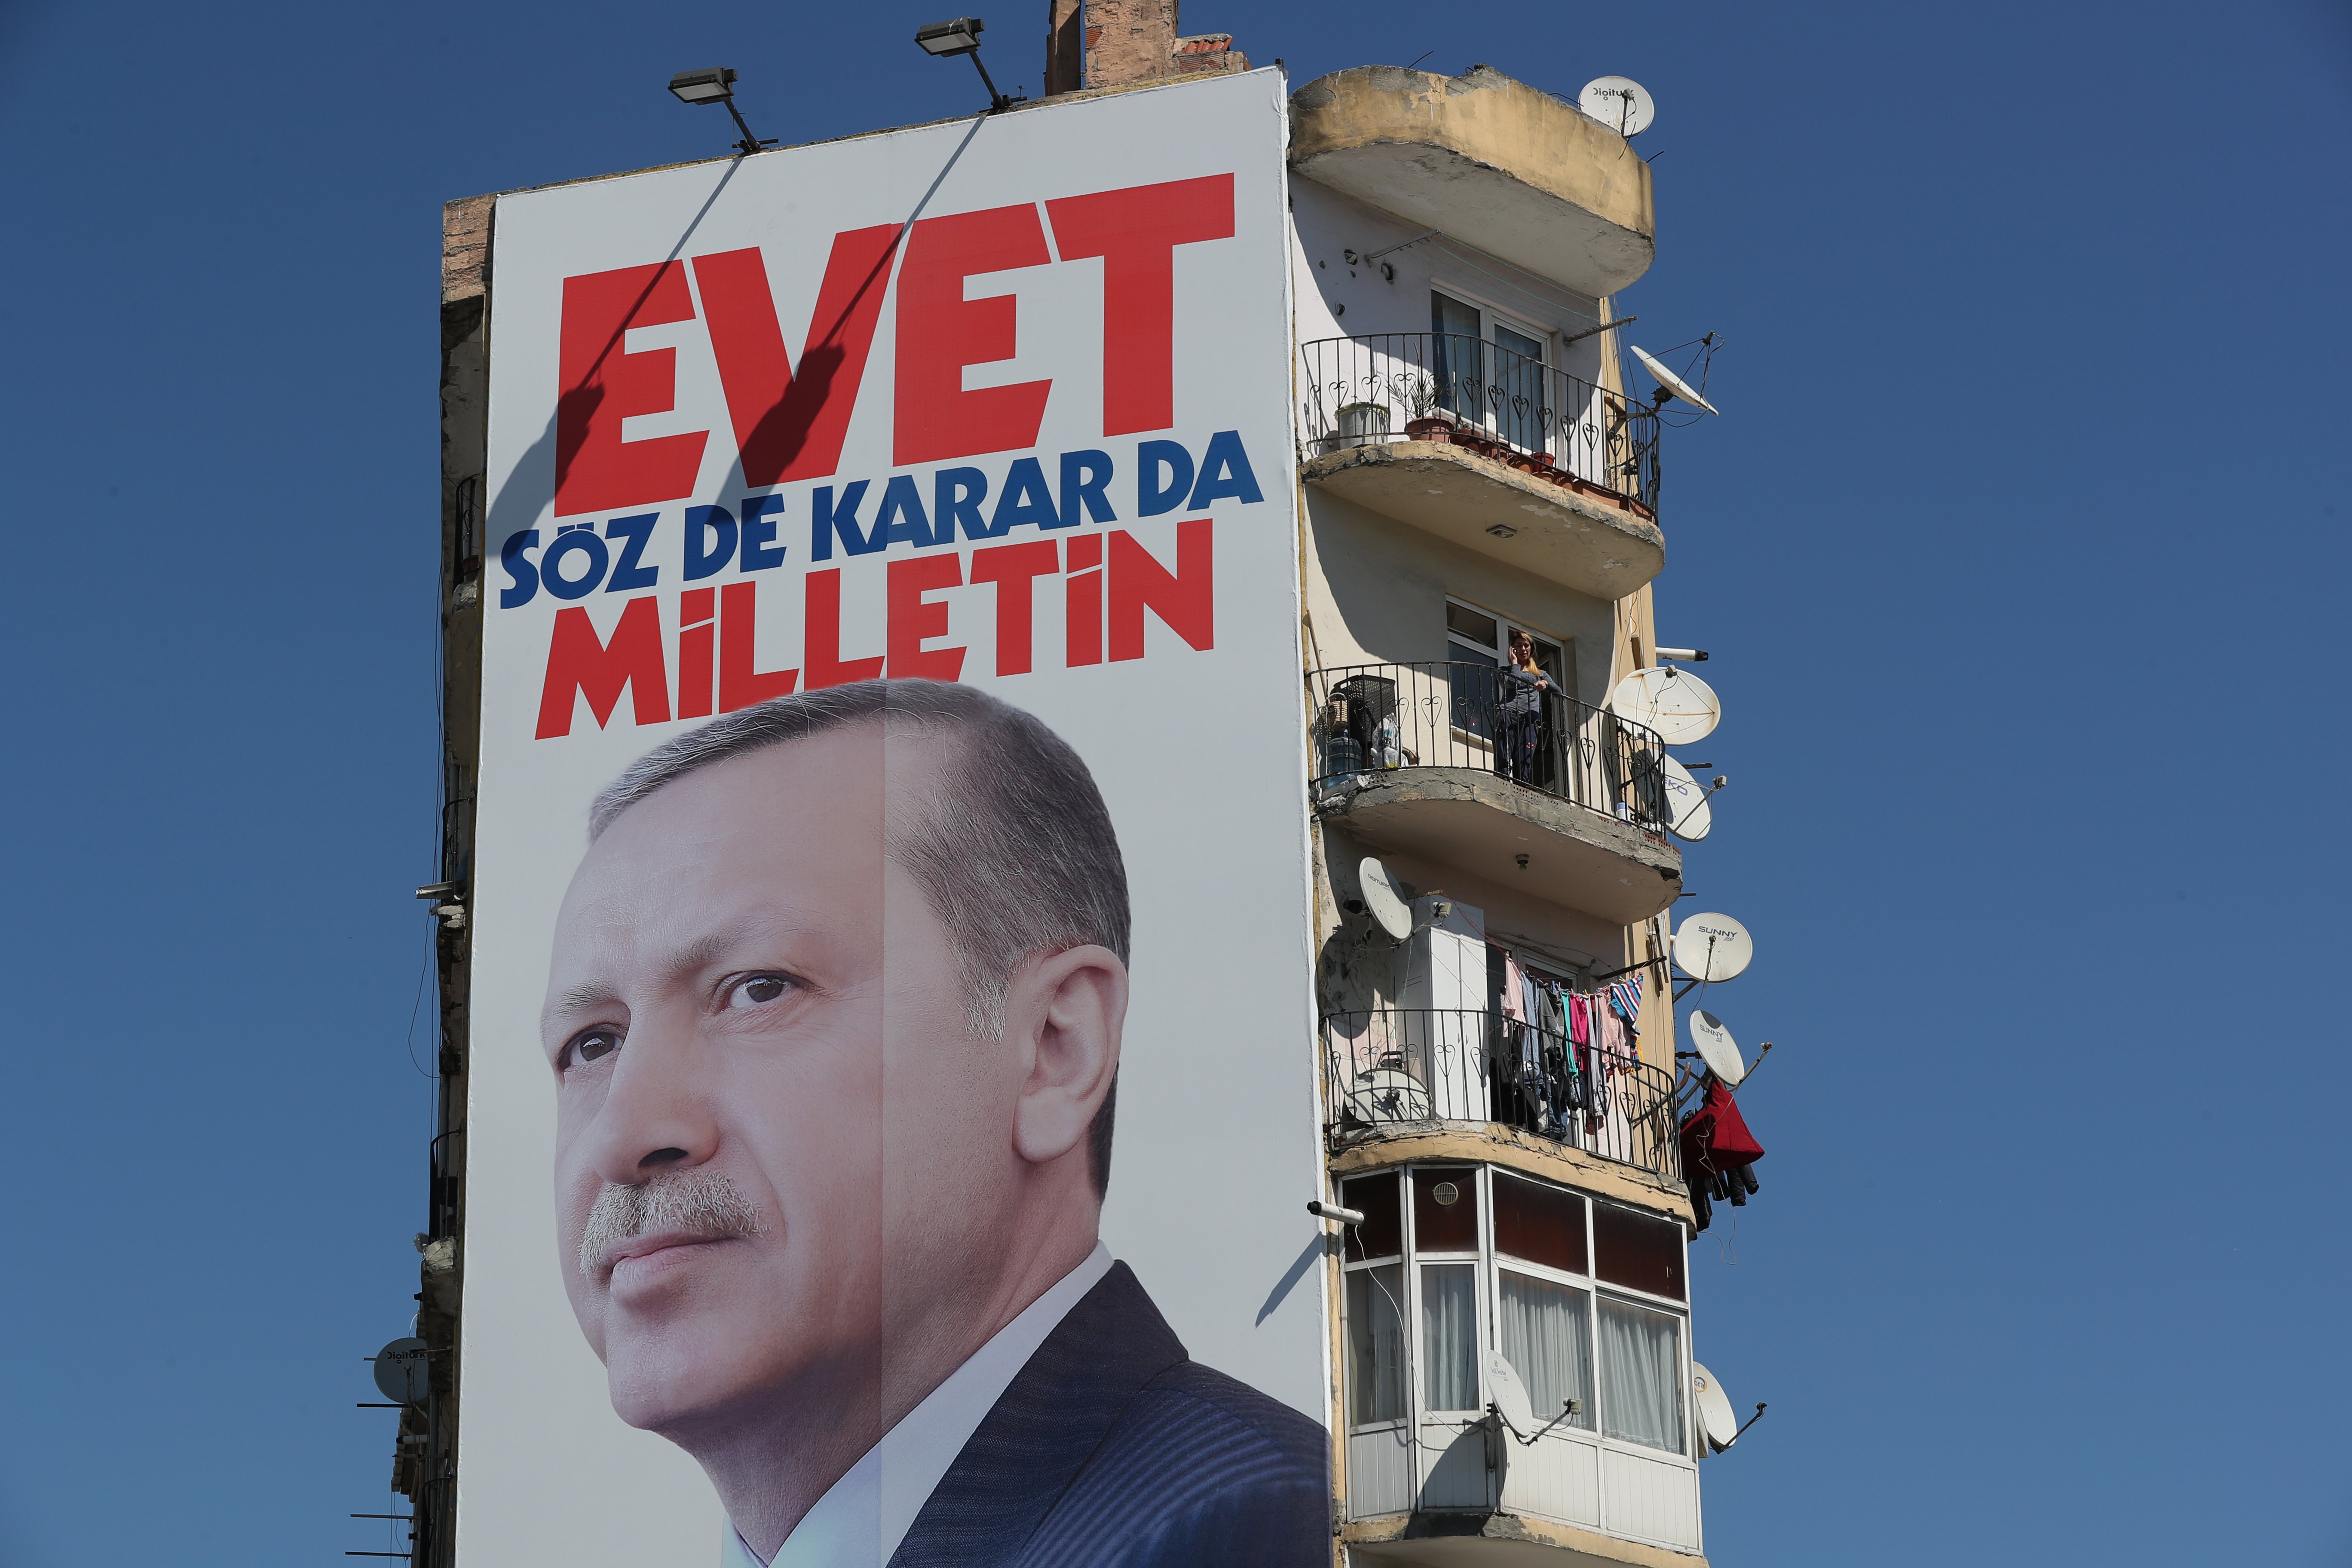 Αμφίρροπη διαγράφεται η μάχη στο δημοψήφισμα για τις υπερεξουσίες Ερντογάν